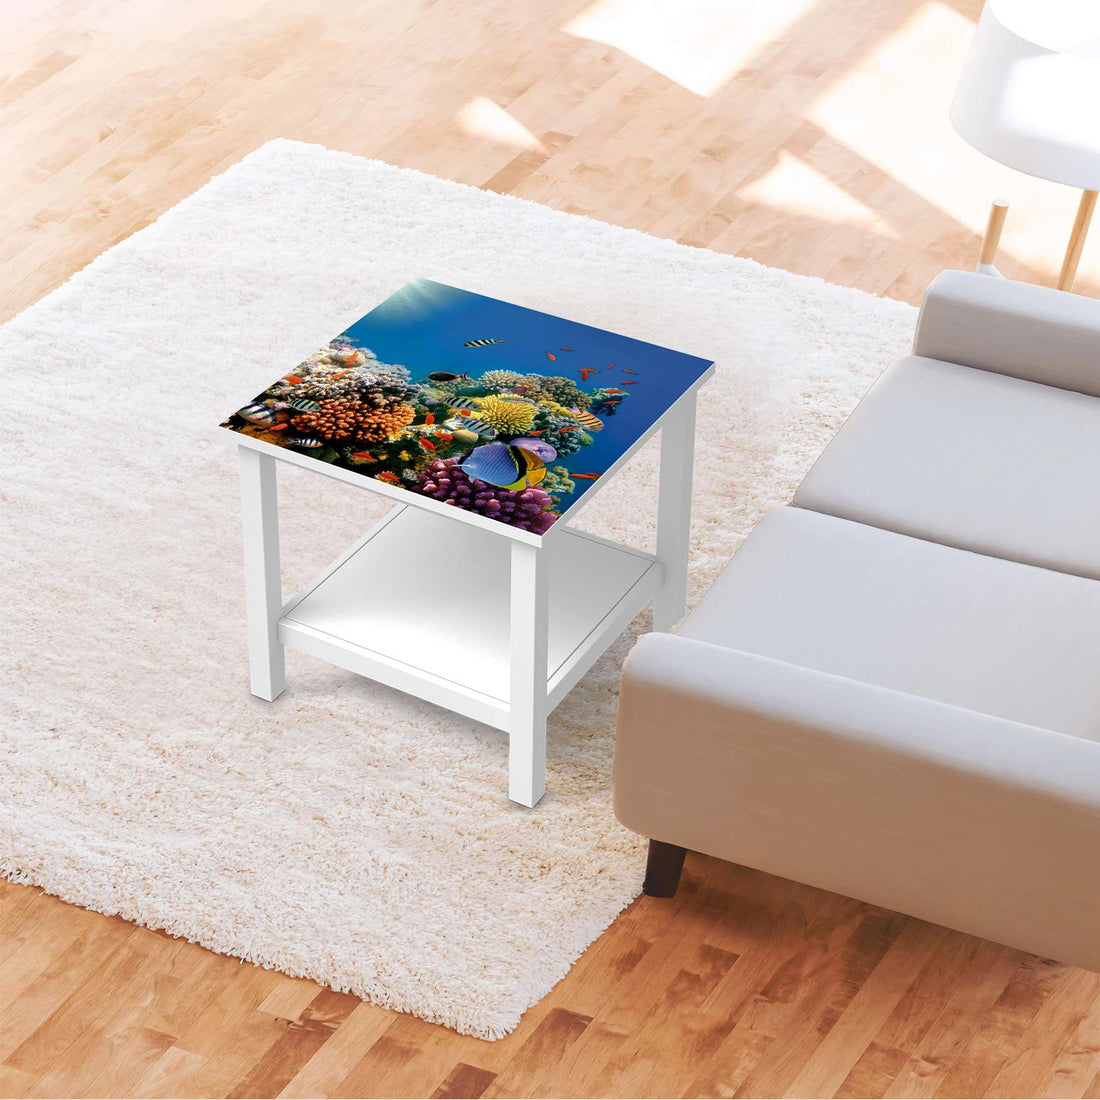 Möbel Klebefolie Coral Reef - IKEA Hemnes Beistelltisch 55x55 cm - Wohnzimmer